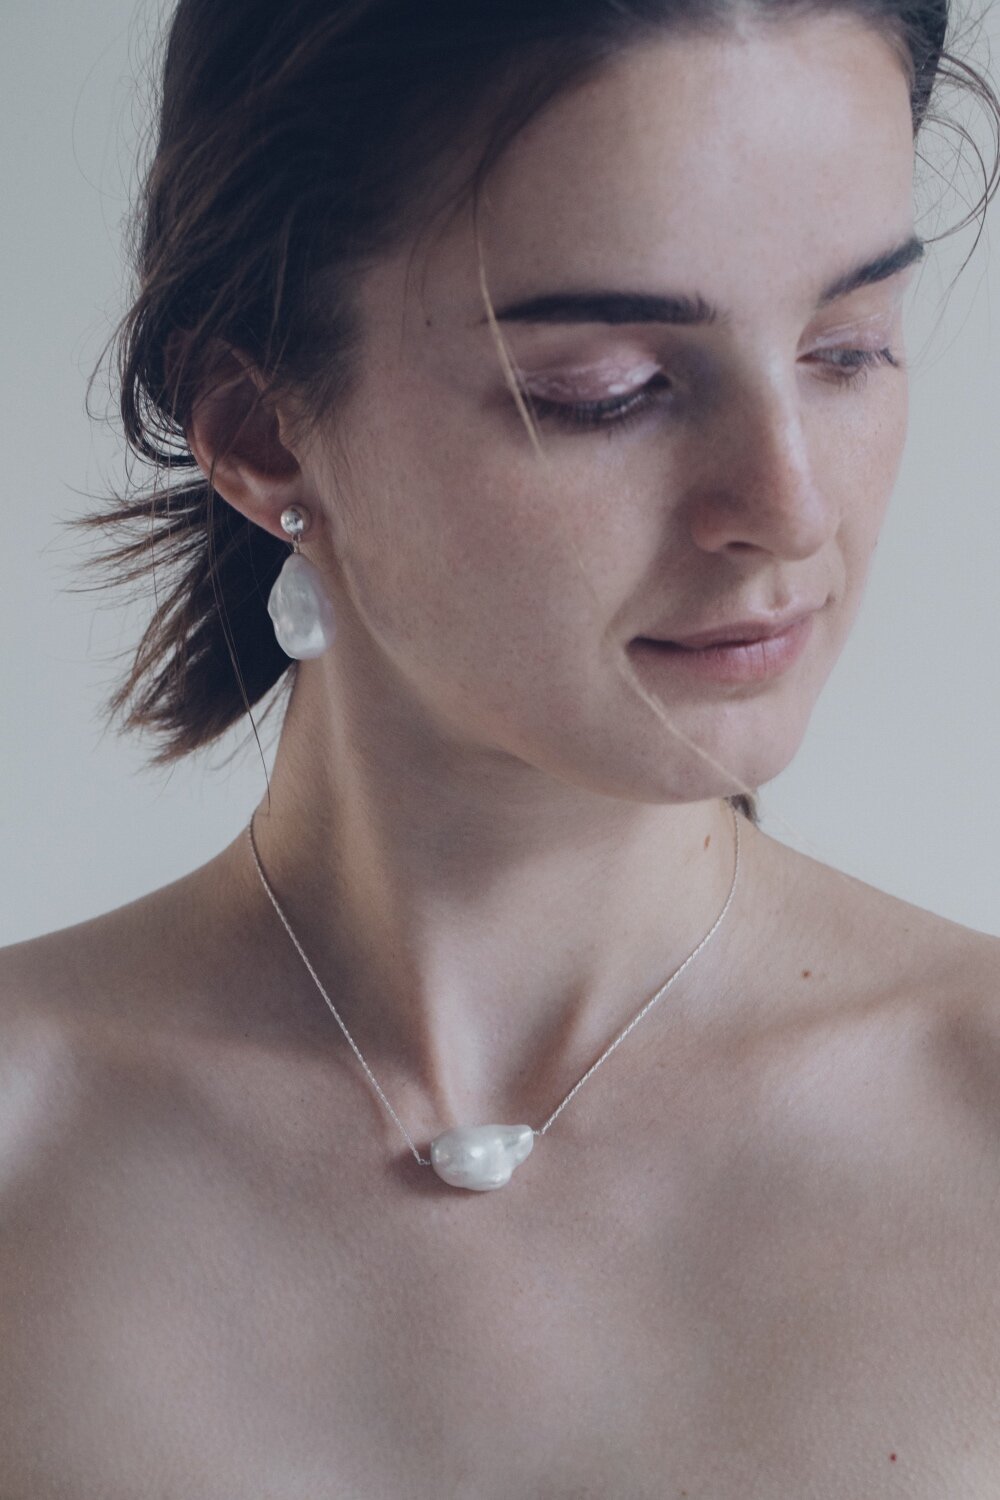   baroque pearl pierce  /  baroque pearl necklace  